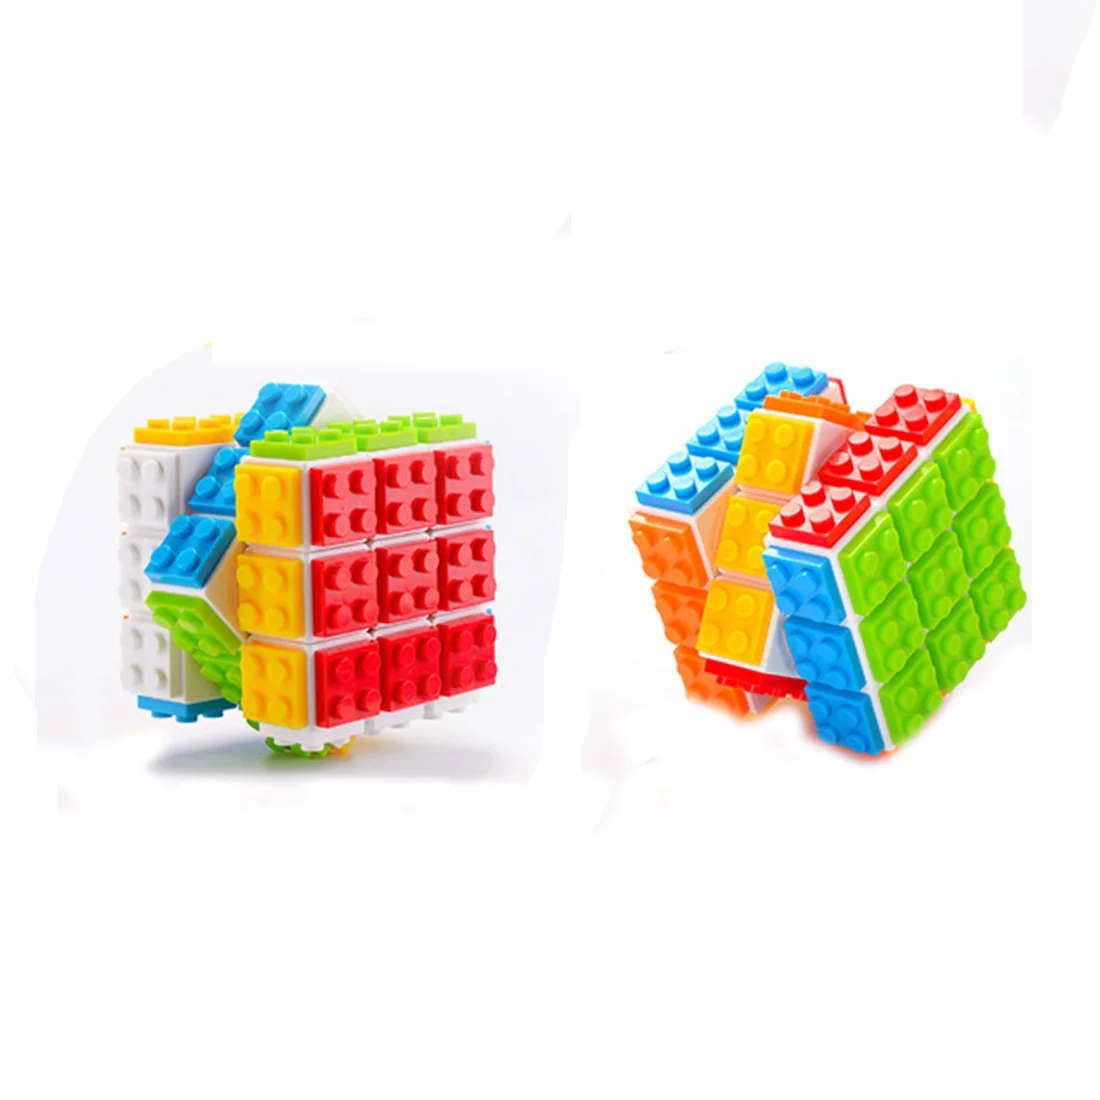 FanXin 3x3 магический куб, квадрат блок куб головоломка игрушка для тренировки мозга